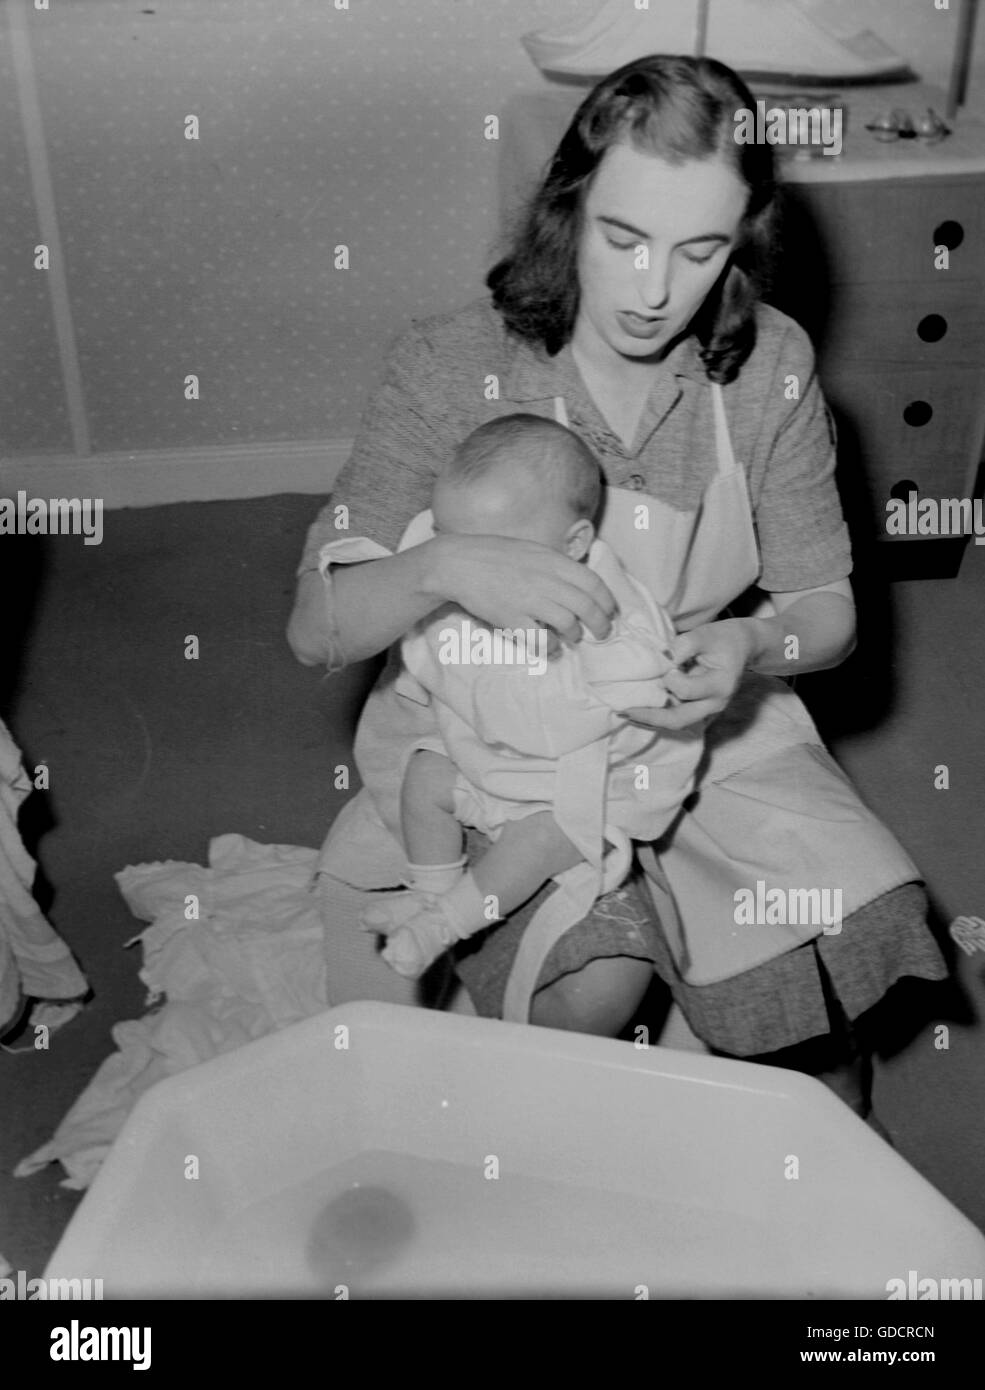 L'heure du bain pour bébé l'histoire sociale, l'Angleterre c1960. Photographie par Tony Henshaw Banque D'Images